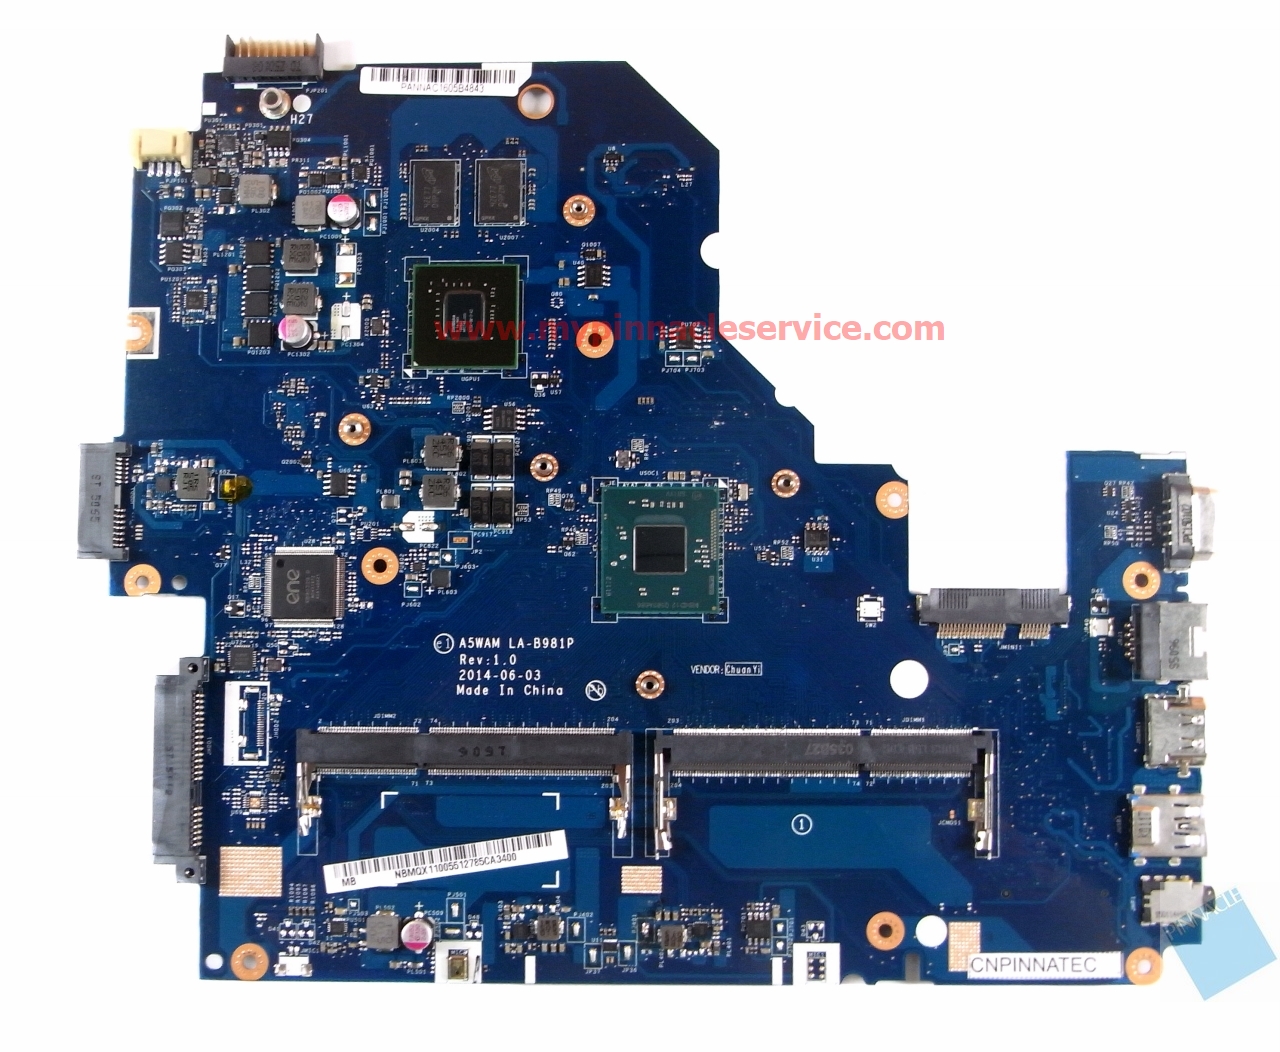 Acer Aspire E5-511G A5WAM LA-B981P N2920 Motherboard â€?NBMQX11005